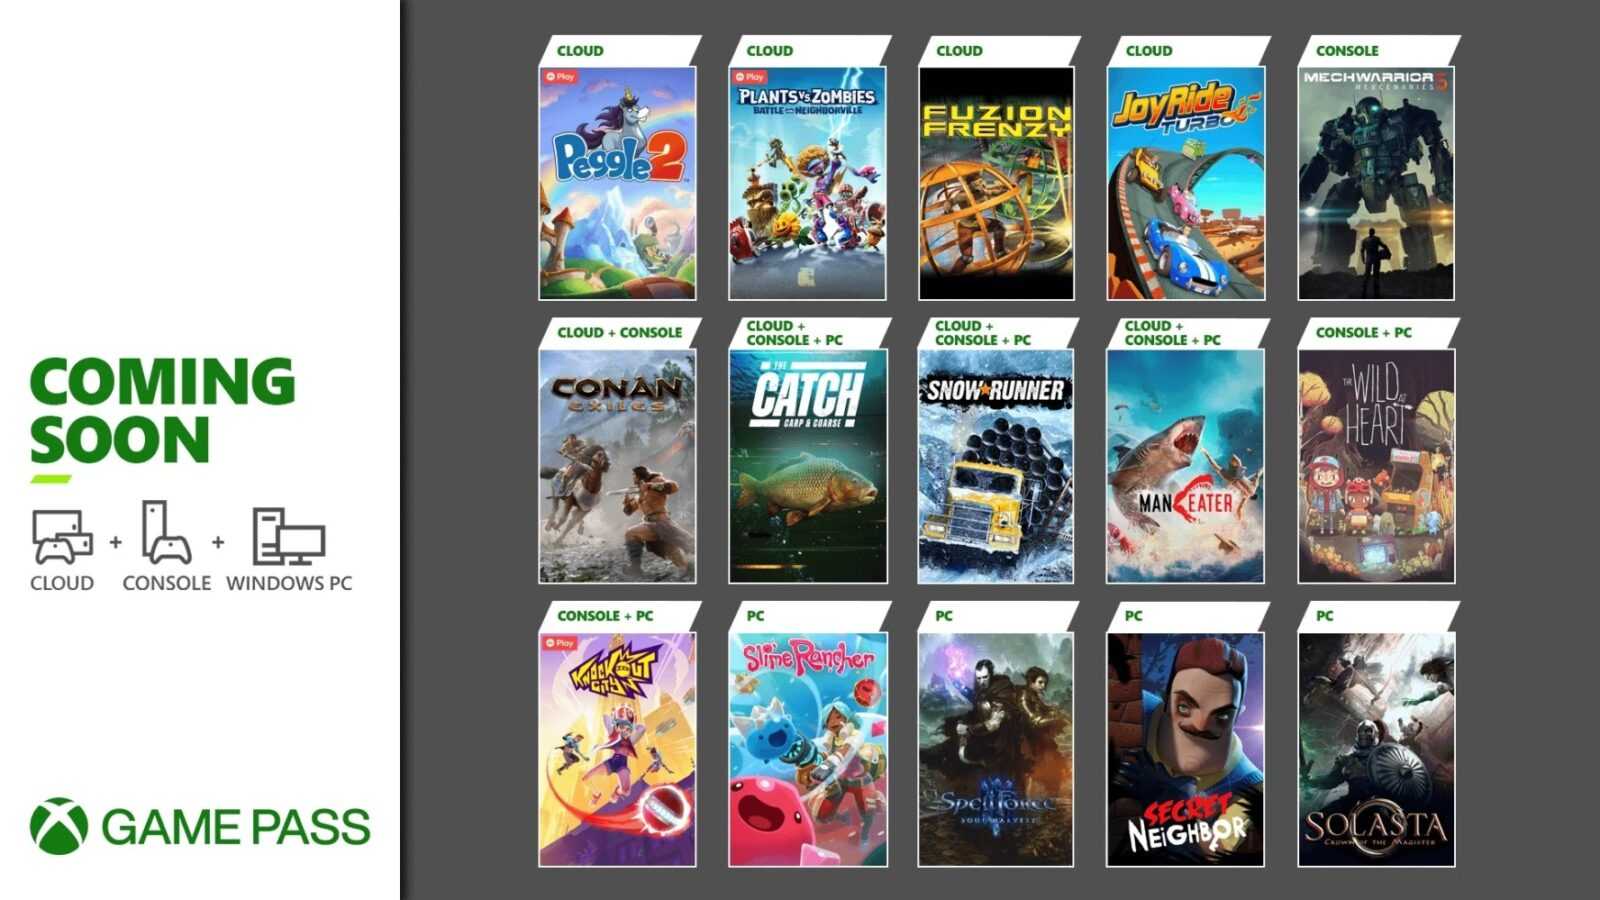 Xbox Game Pass aggiunge 15 nuovi giochi, ottiene l'ascesa al lancio e perde Kingdom Hearts